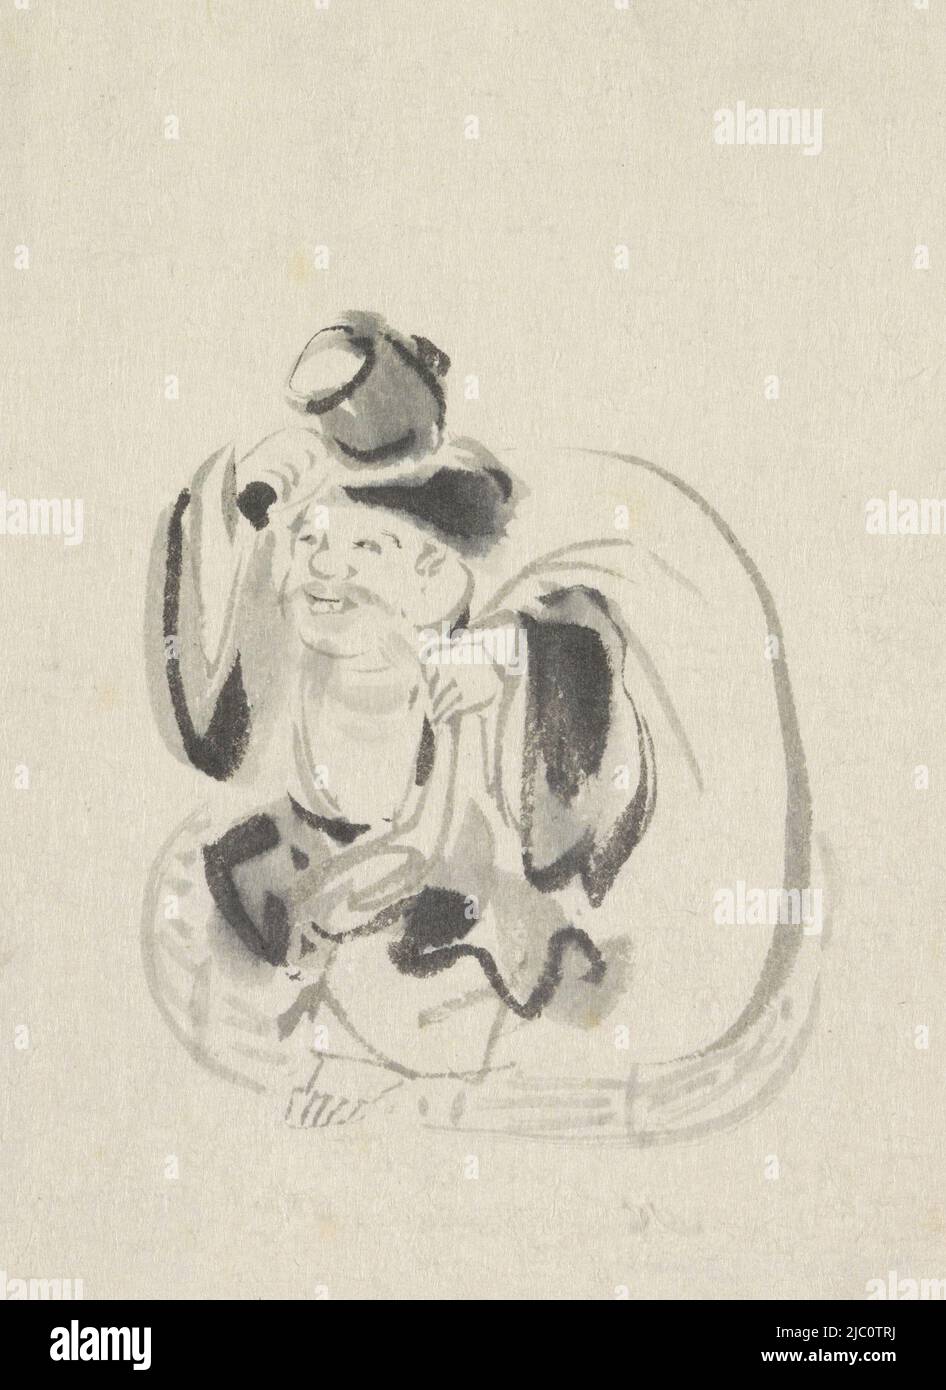 Il dio giapponese della fortuna Daikoku con i suoi attributi fissi il martello e la borsa di riso, seduto dio della fortuna Ebisu, disegnatore: Utagawa Kuniyoshi, 1808 - 1861, carta, pennello, a 159 mm x l 115 mm Foto Stock